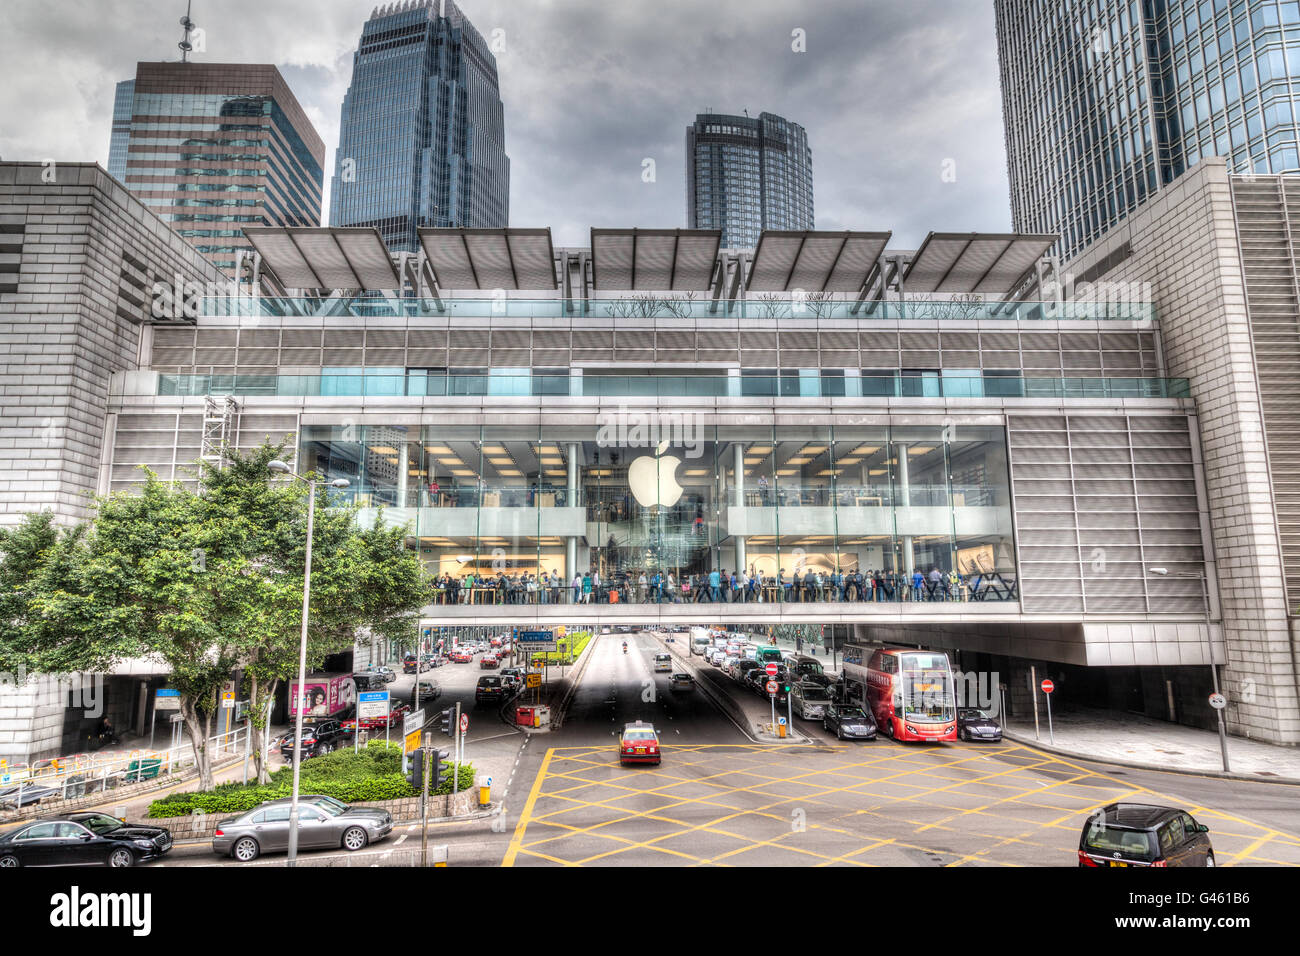 Hong Kong SAR, China - 31. März 2015: Masse im Inneren der Apple-Store am International Finance Centre, Hongkong. Stockfoto